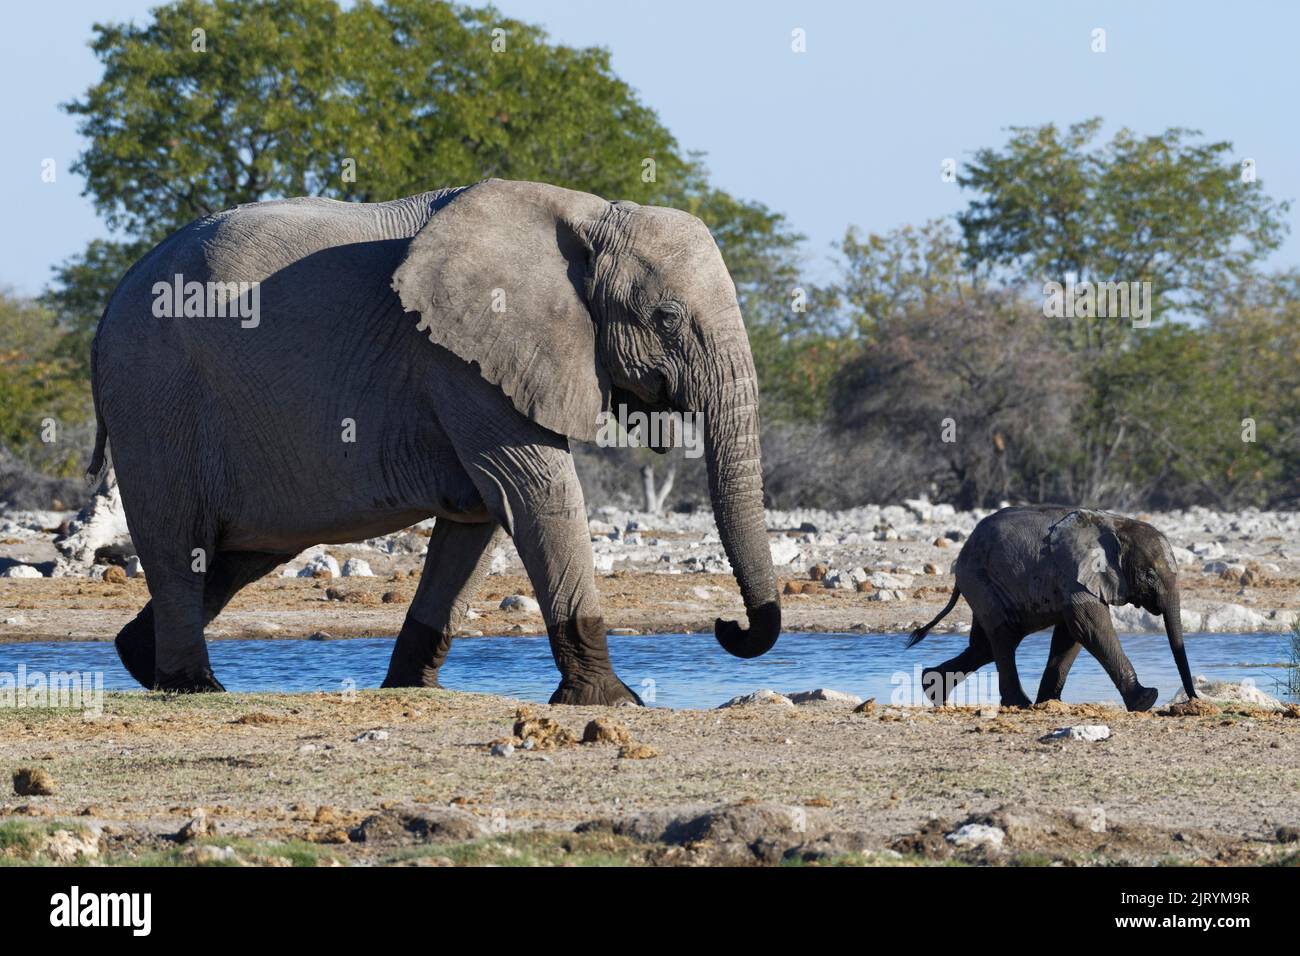 Éléphants de brousse africains (Loxodonta africana), mère avec bébé éléphant marchant le long du trou d'eau, Parc national d'Etosha, Namibie, Afrique Banque D'Images